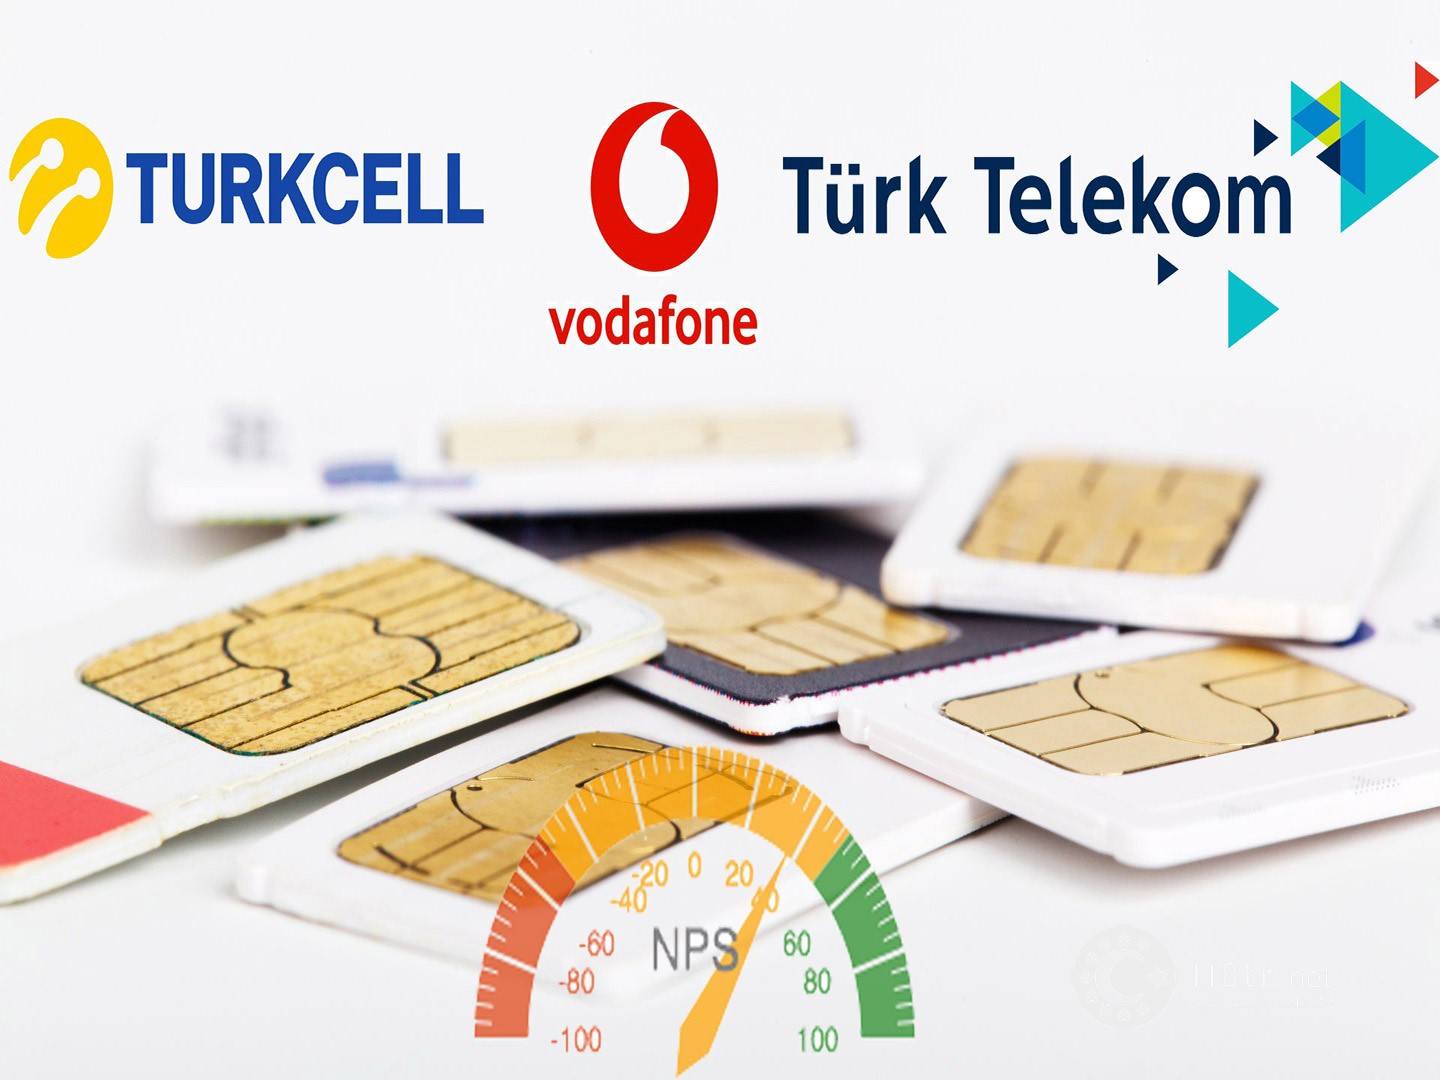 اپراتورهای تلفن همراه در ترکیه 14